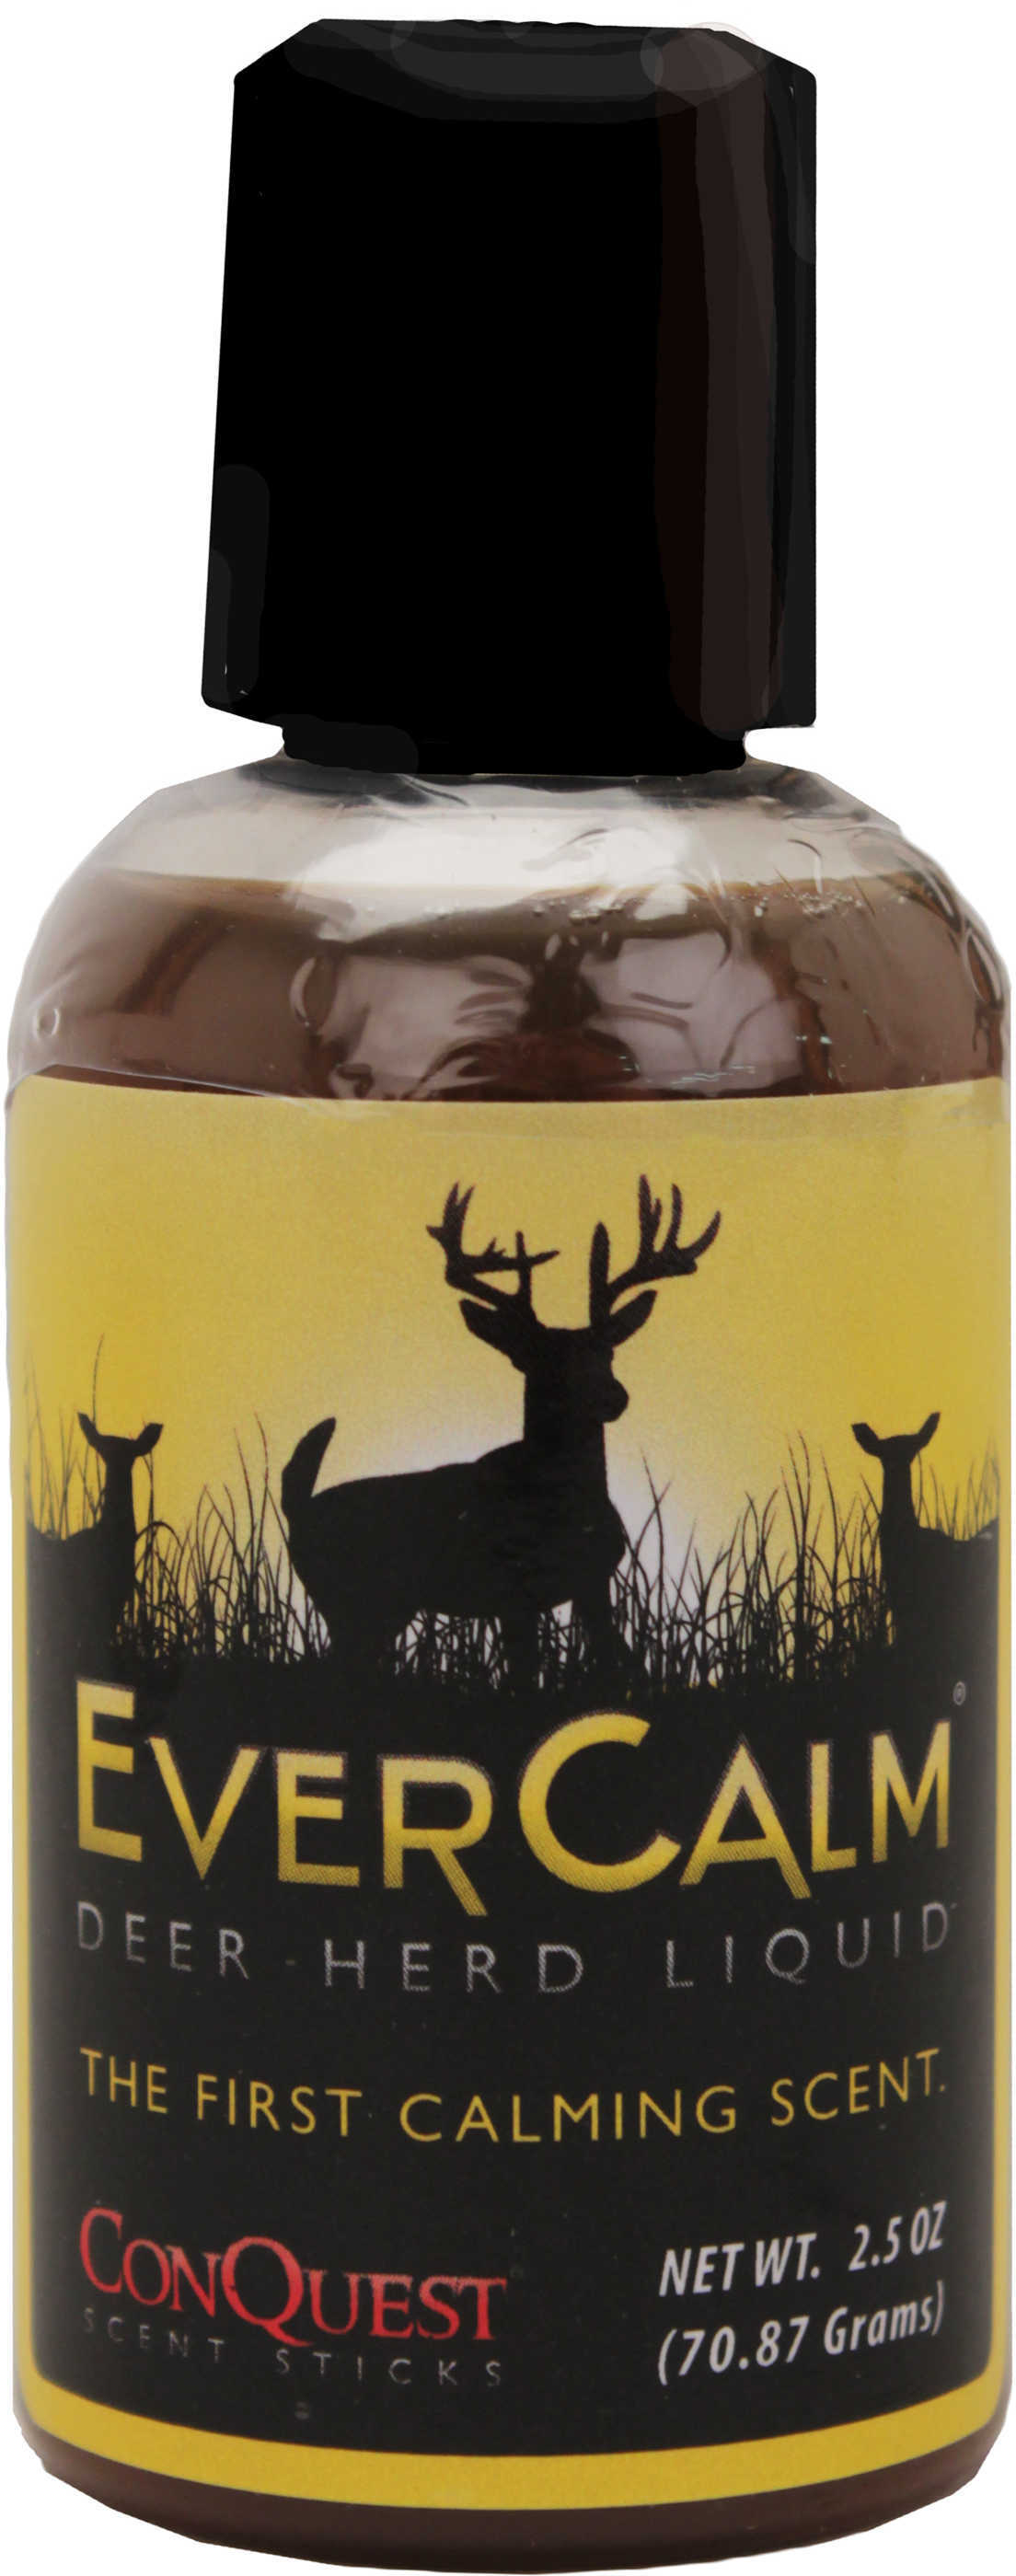 ConQuest EverCalm Scent Liquid Deer Herd Model: 1207